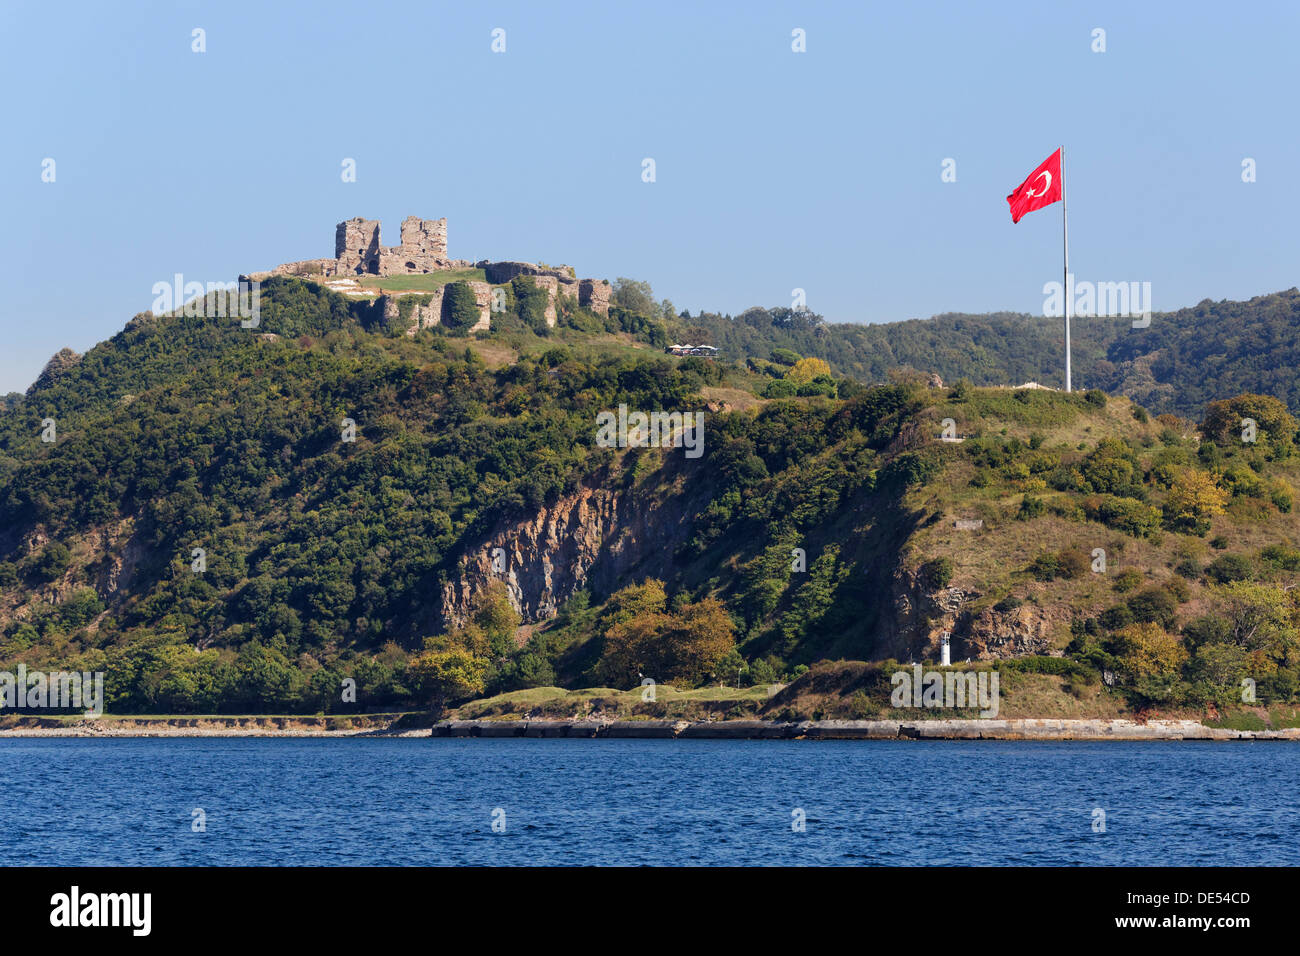 Blick vom Bosporus in Richtung der Genueser Burg oder Yoros Kalesi, Bosporus, Anadolu Kavagi, Istanbul, asiatische Seite Stockfoto